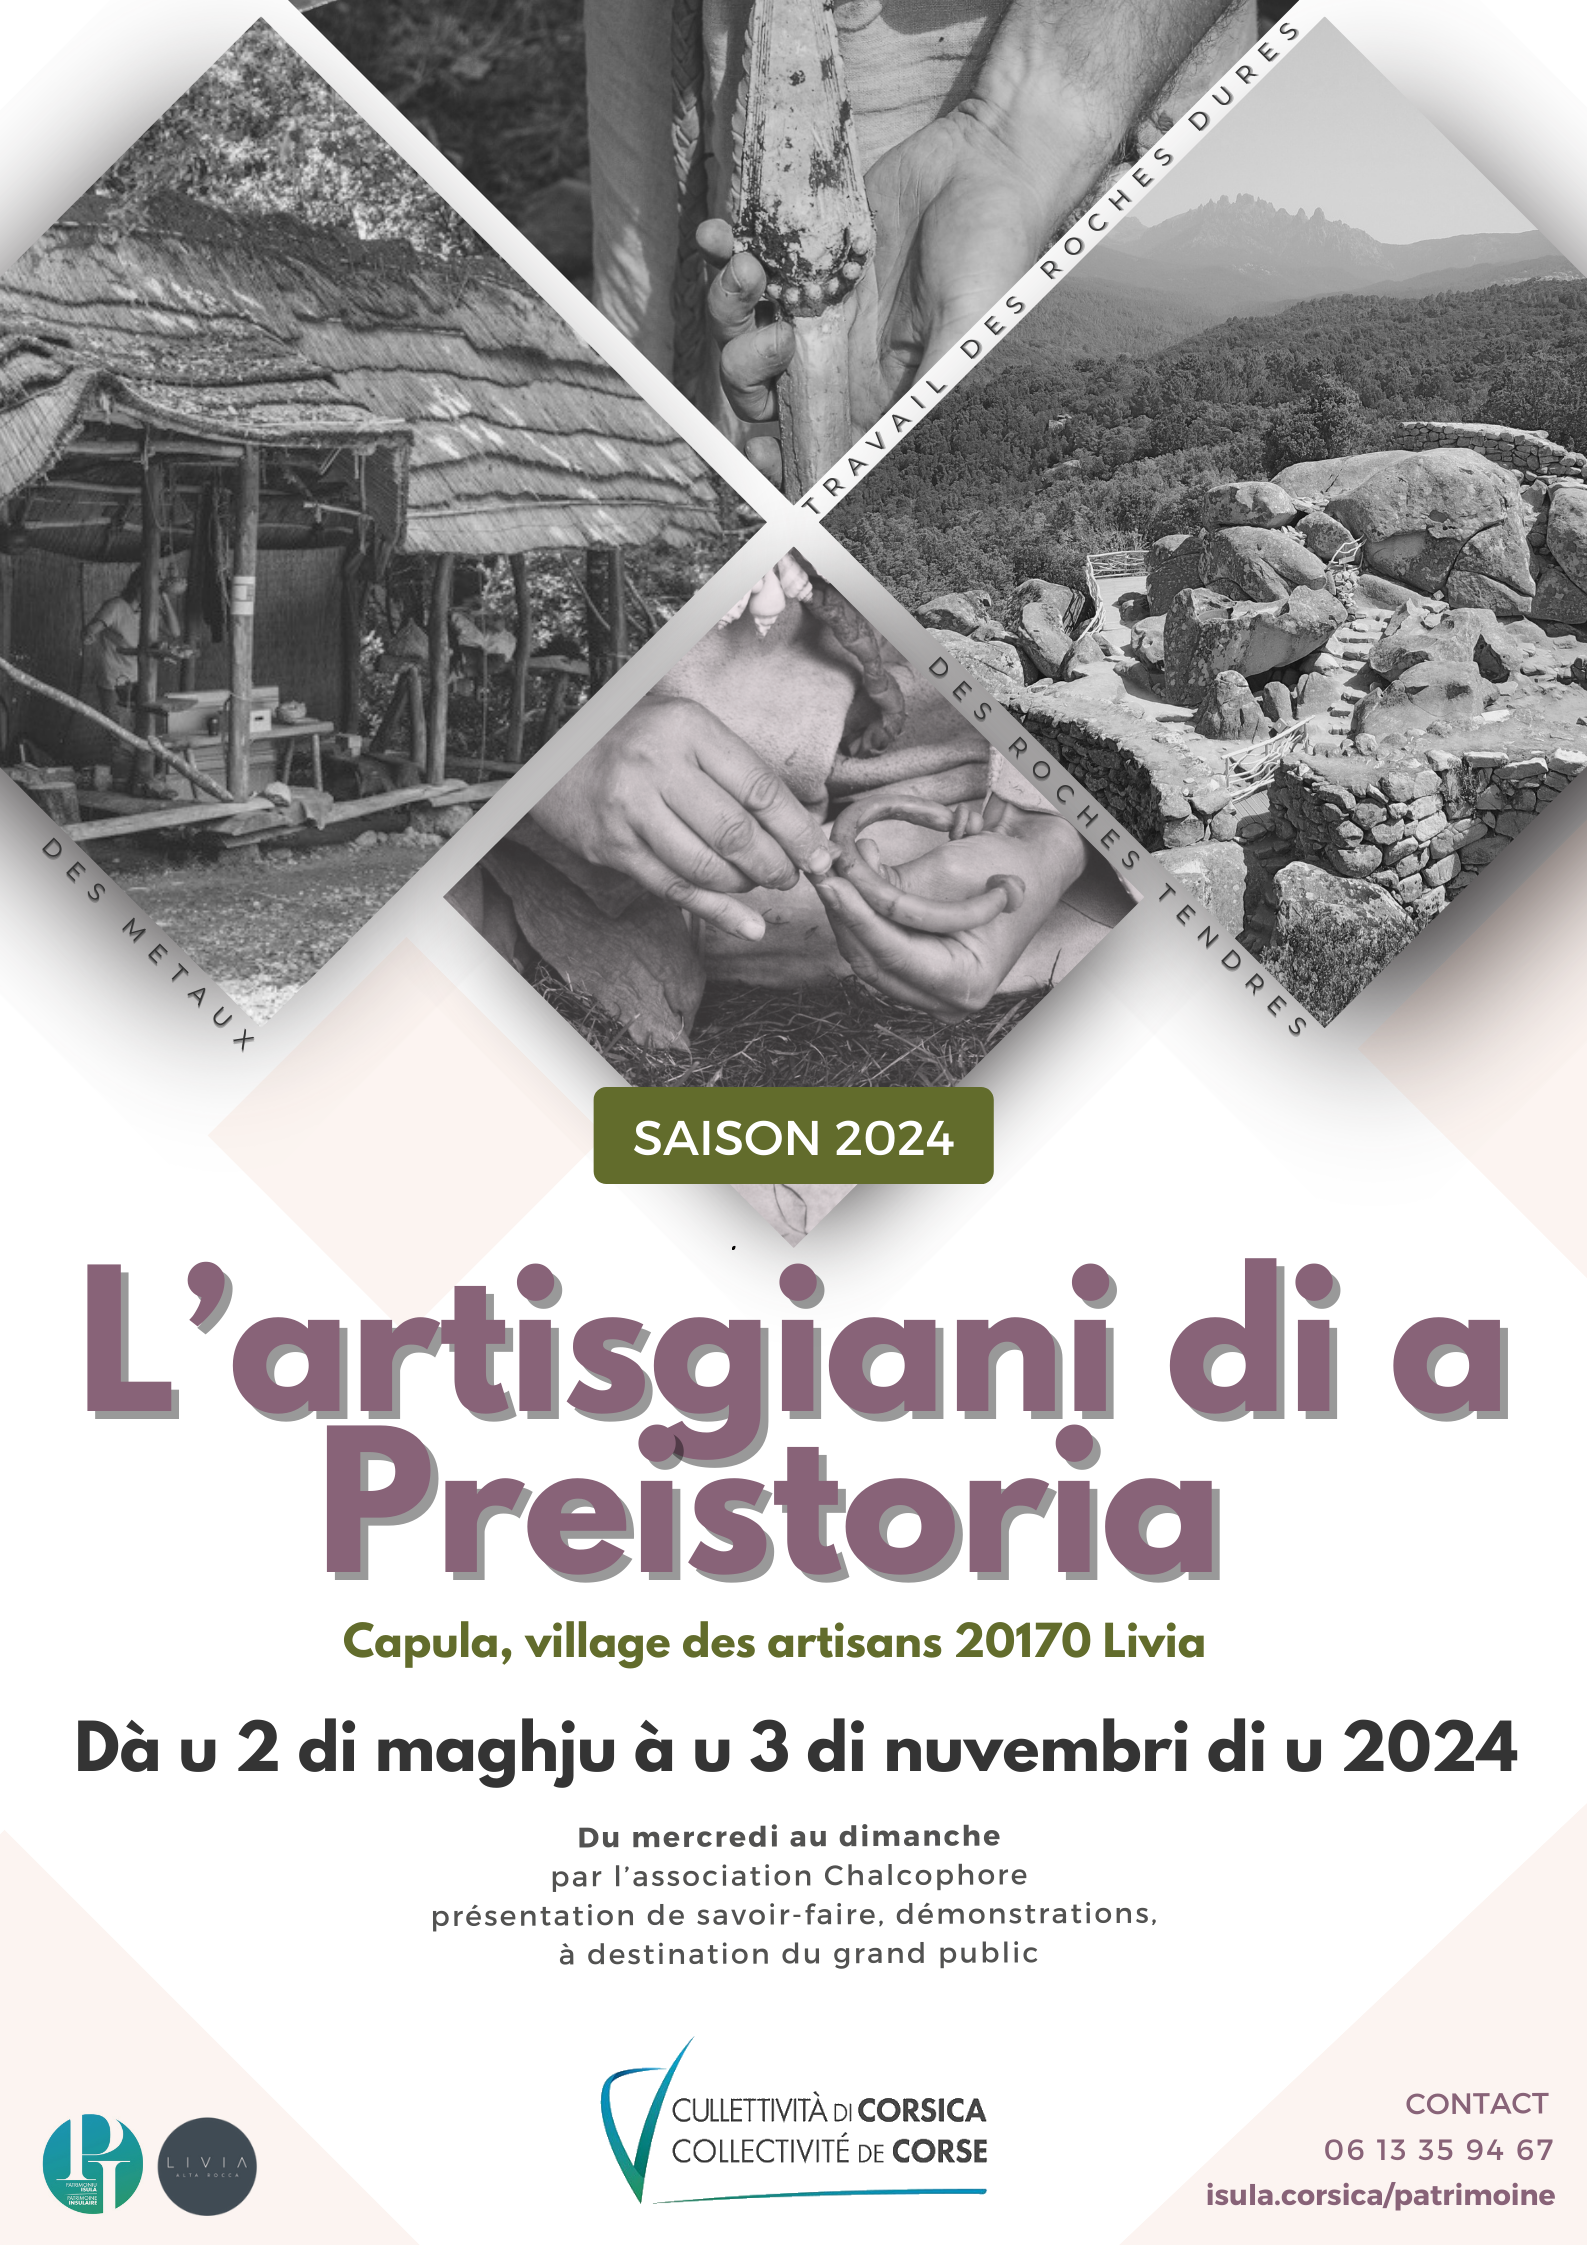 "L'artisgiani di a priistoria", des animations ouvertes à tous sur le site de Cuccuruzzu-Capula